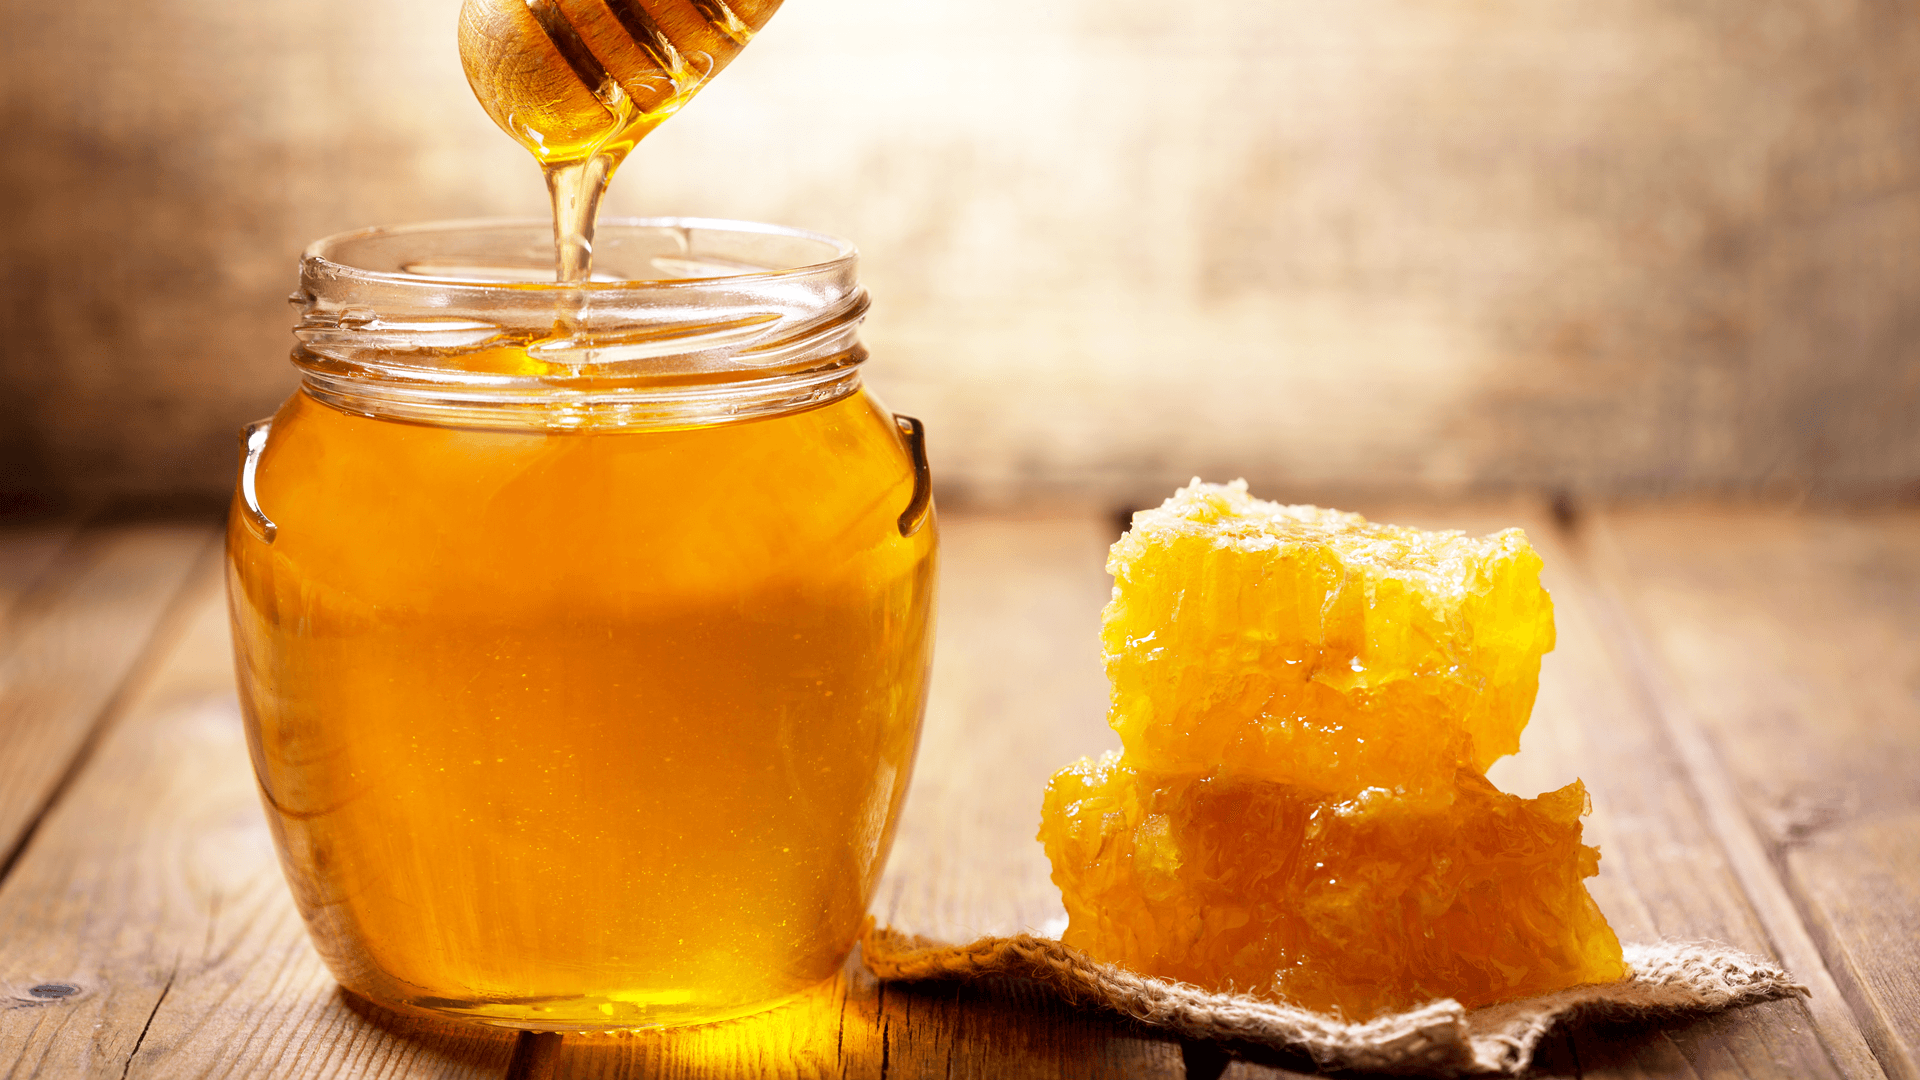 Không chỉ tốt cho sức khỏe, mật ong còn nhiều công dụng trị mụn, làm đẹp da